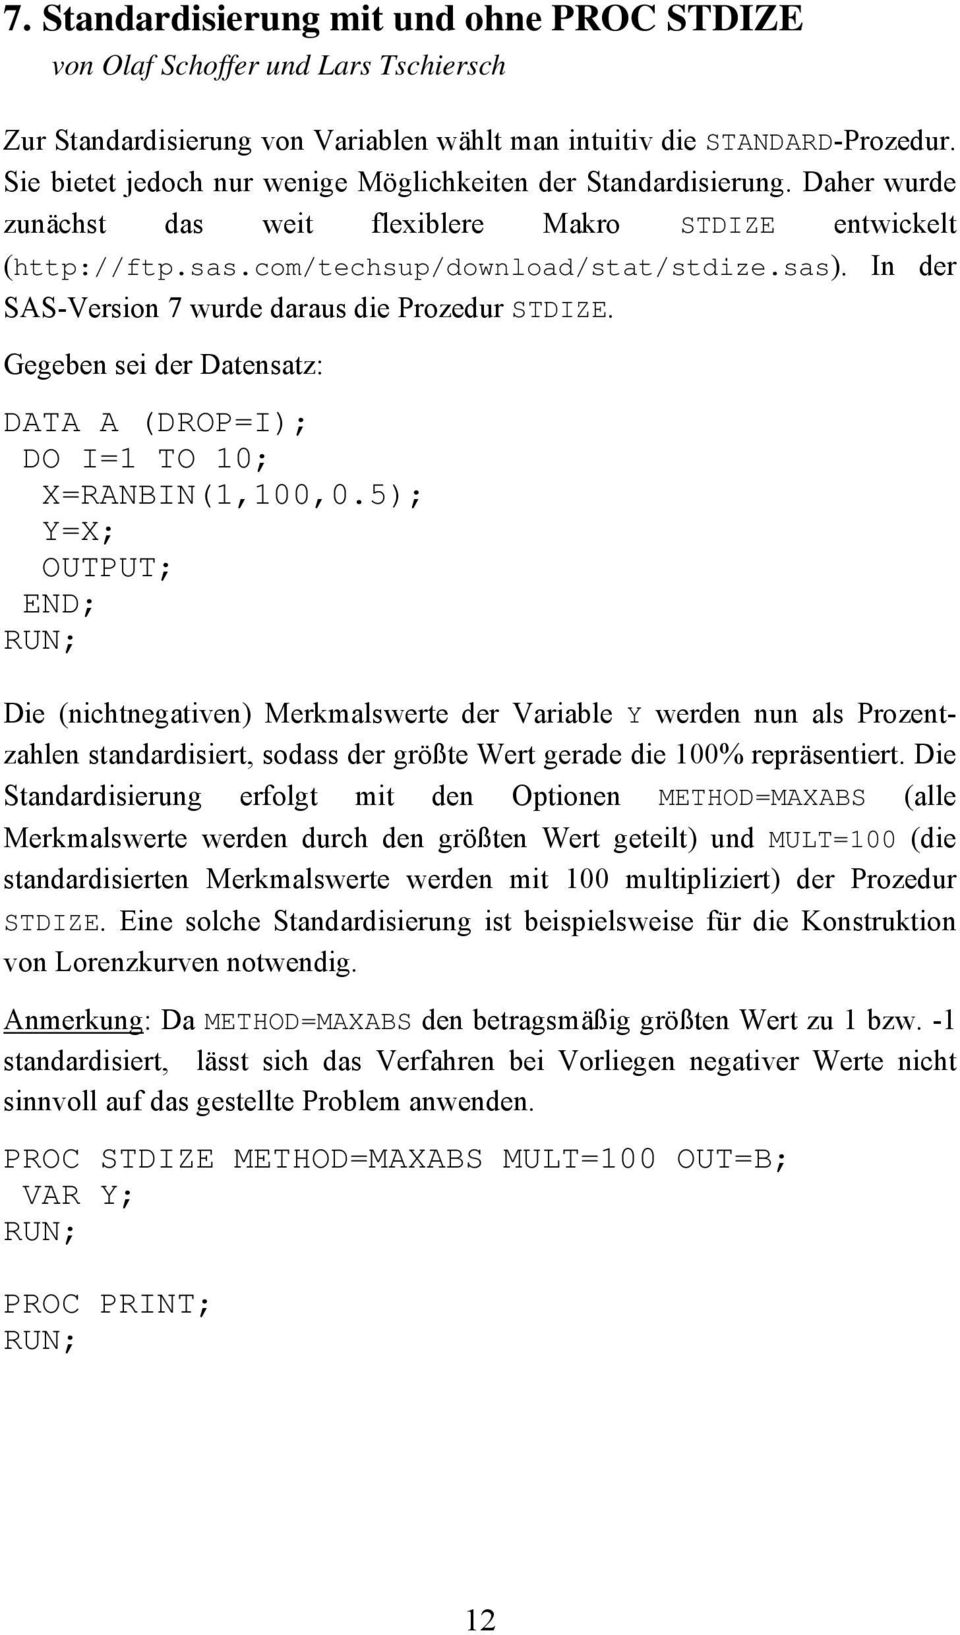 In der SAS-Version 7 wurde daraus die Prozedur STDIZE. Gegeben sei der Datensatz: DATA A (DROP=I); DO I=1 TO 10; X=RANBIN(1,100,0.